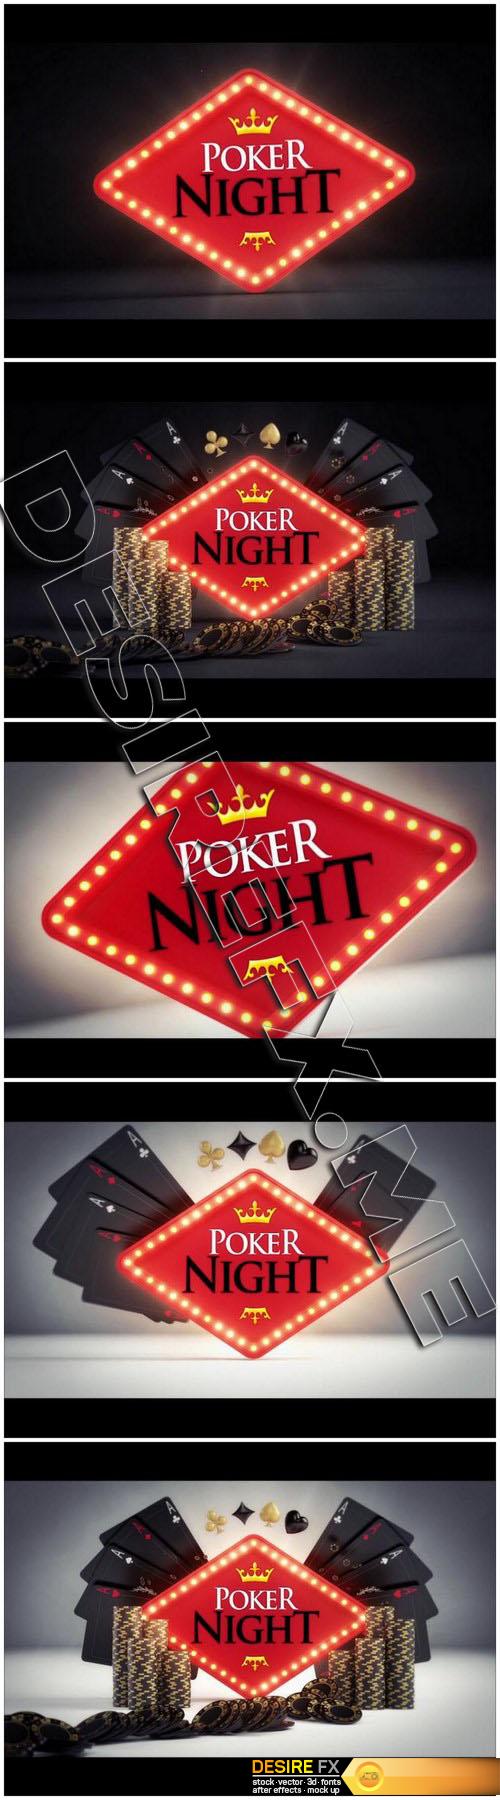 pond5-81864504-Online Gambling Poker Logo Reveals